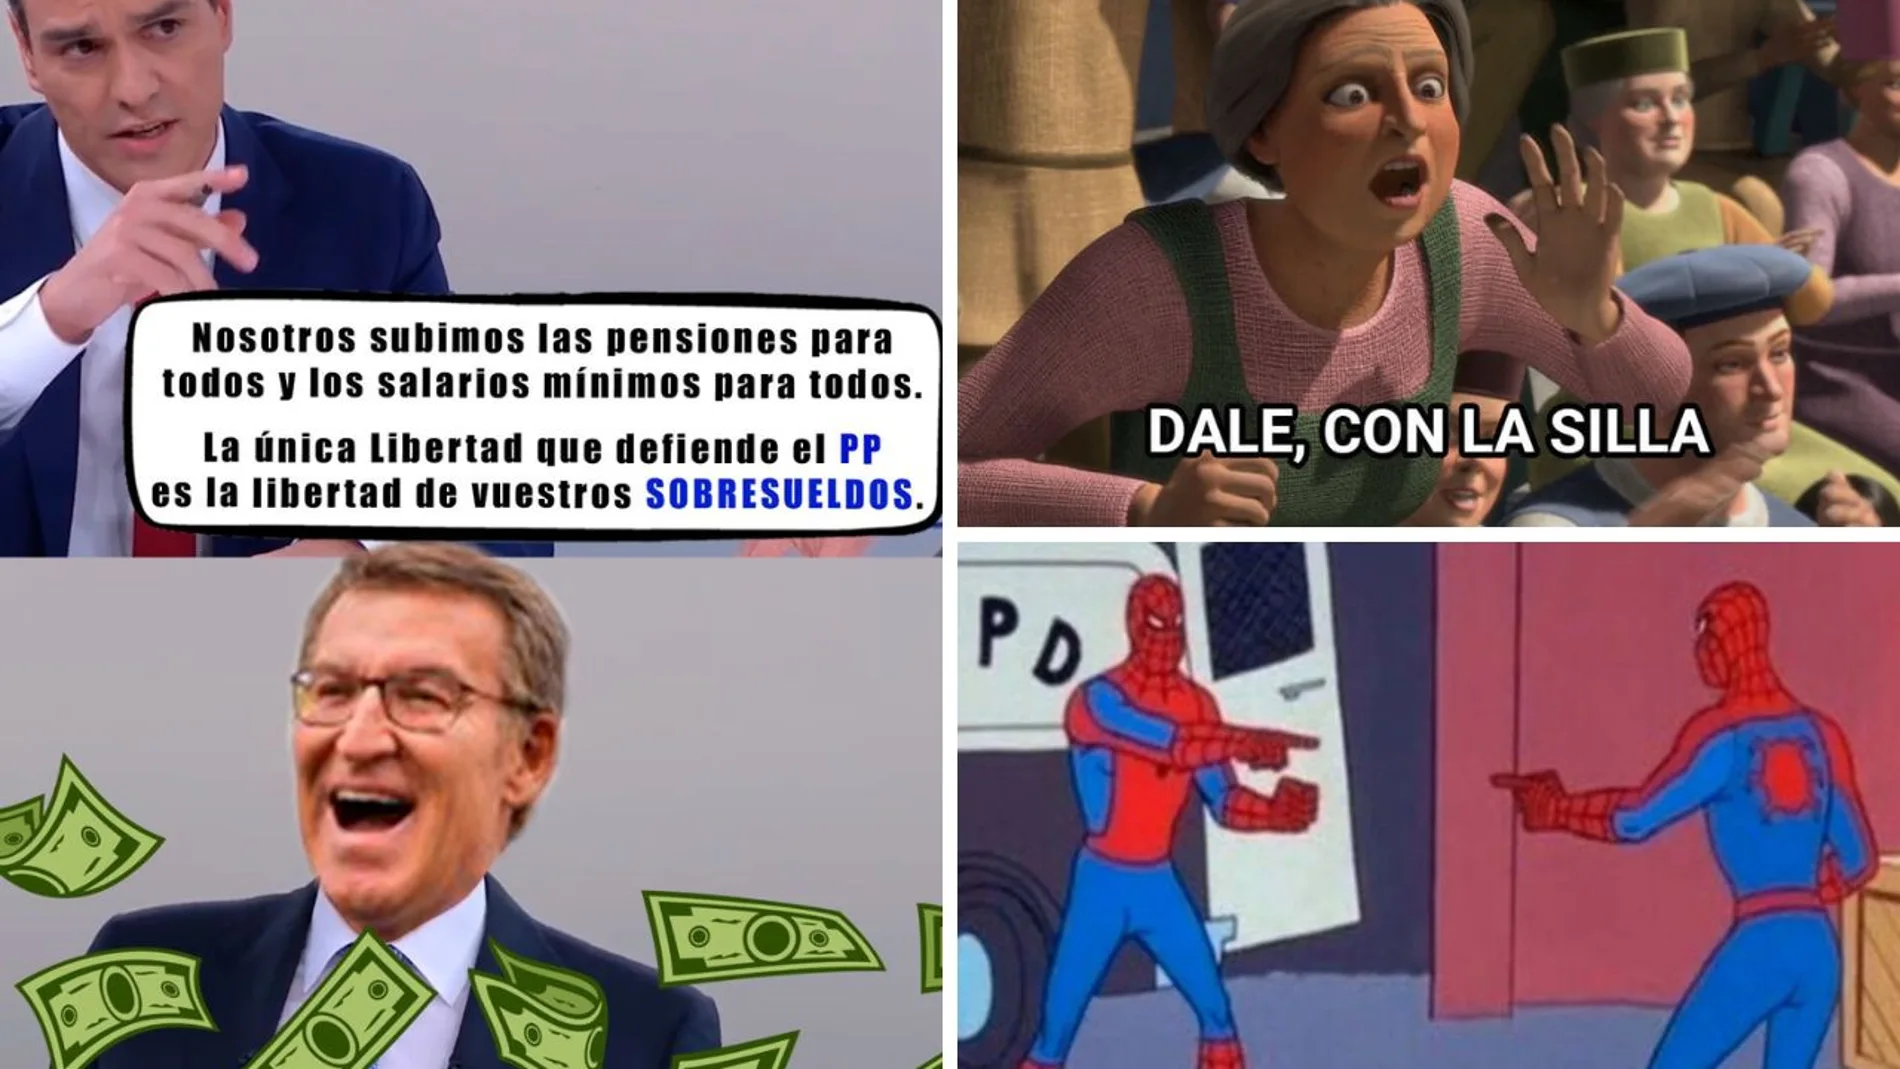 Los memes del debate electoral cara a cara entre Sánchez y Feijóo